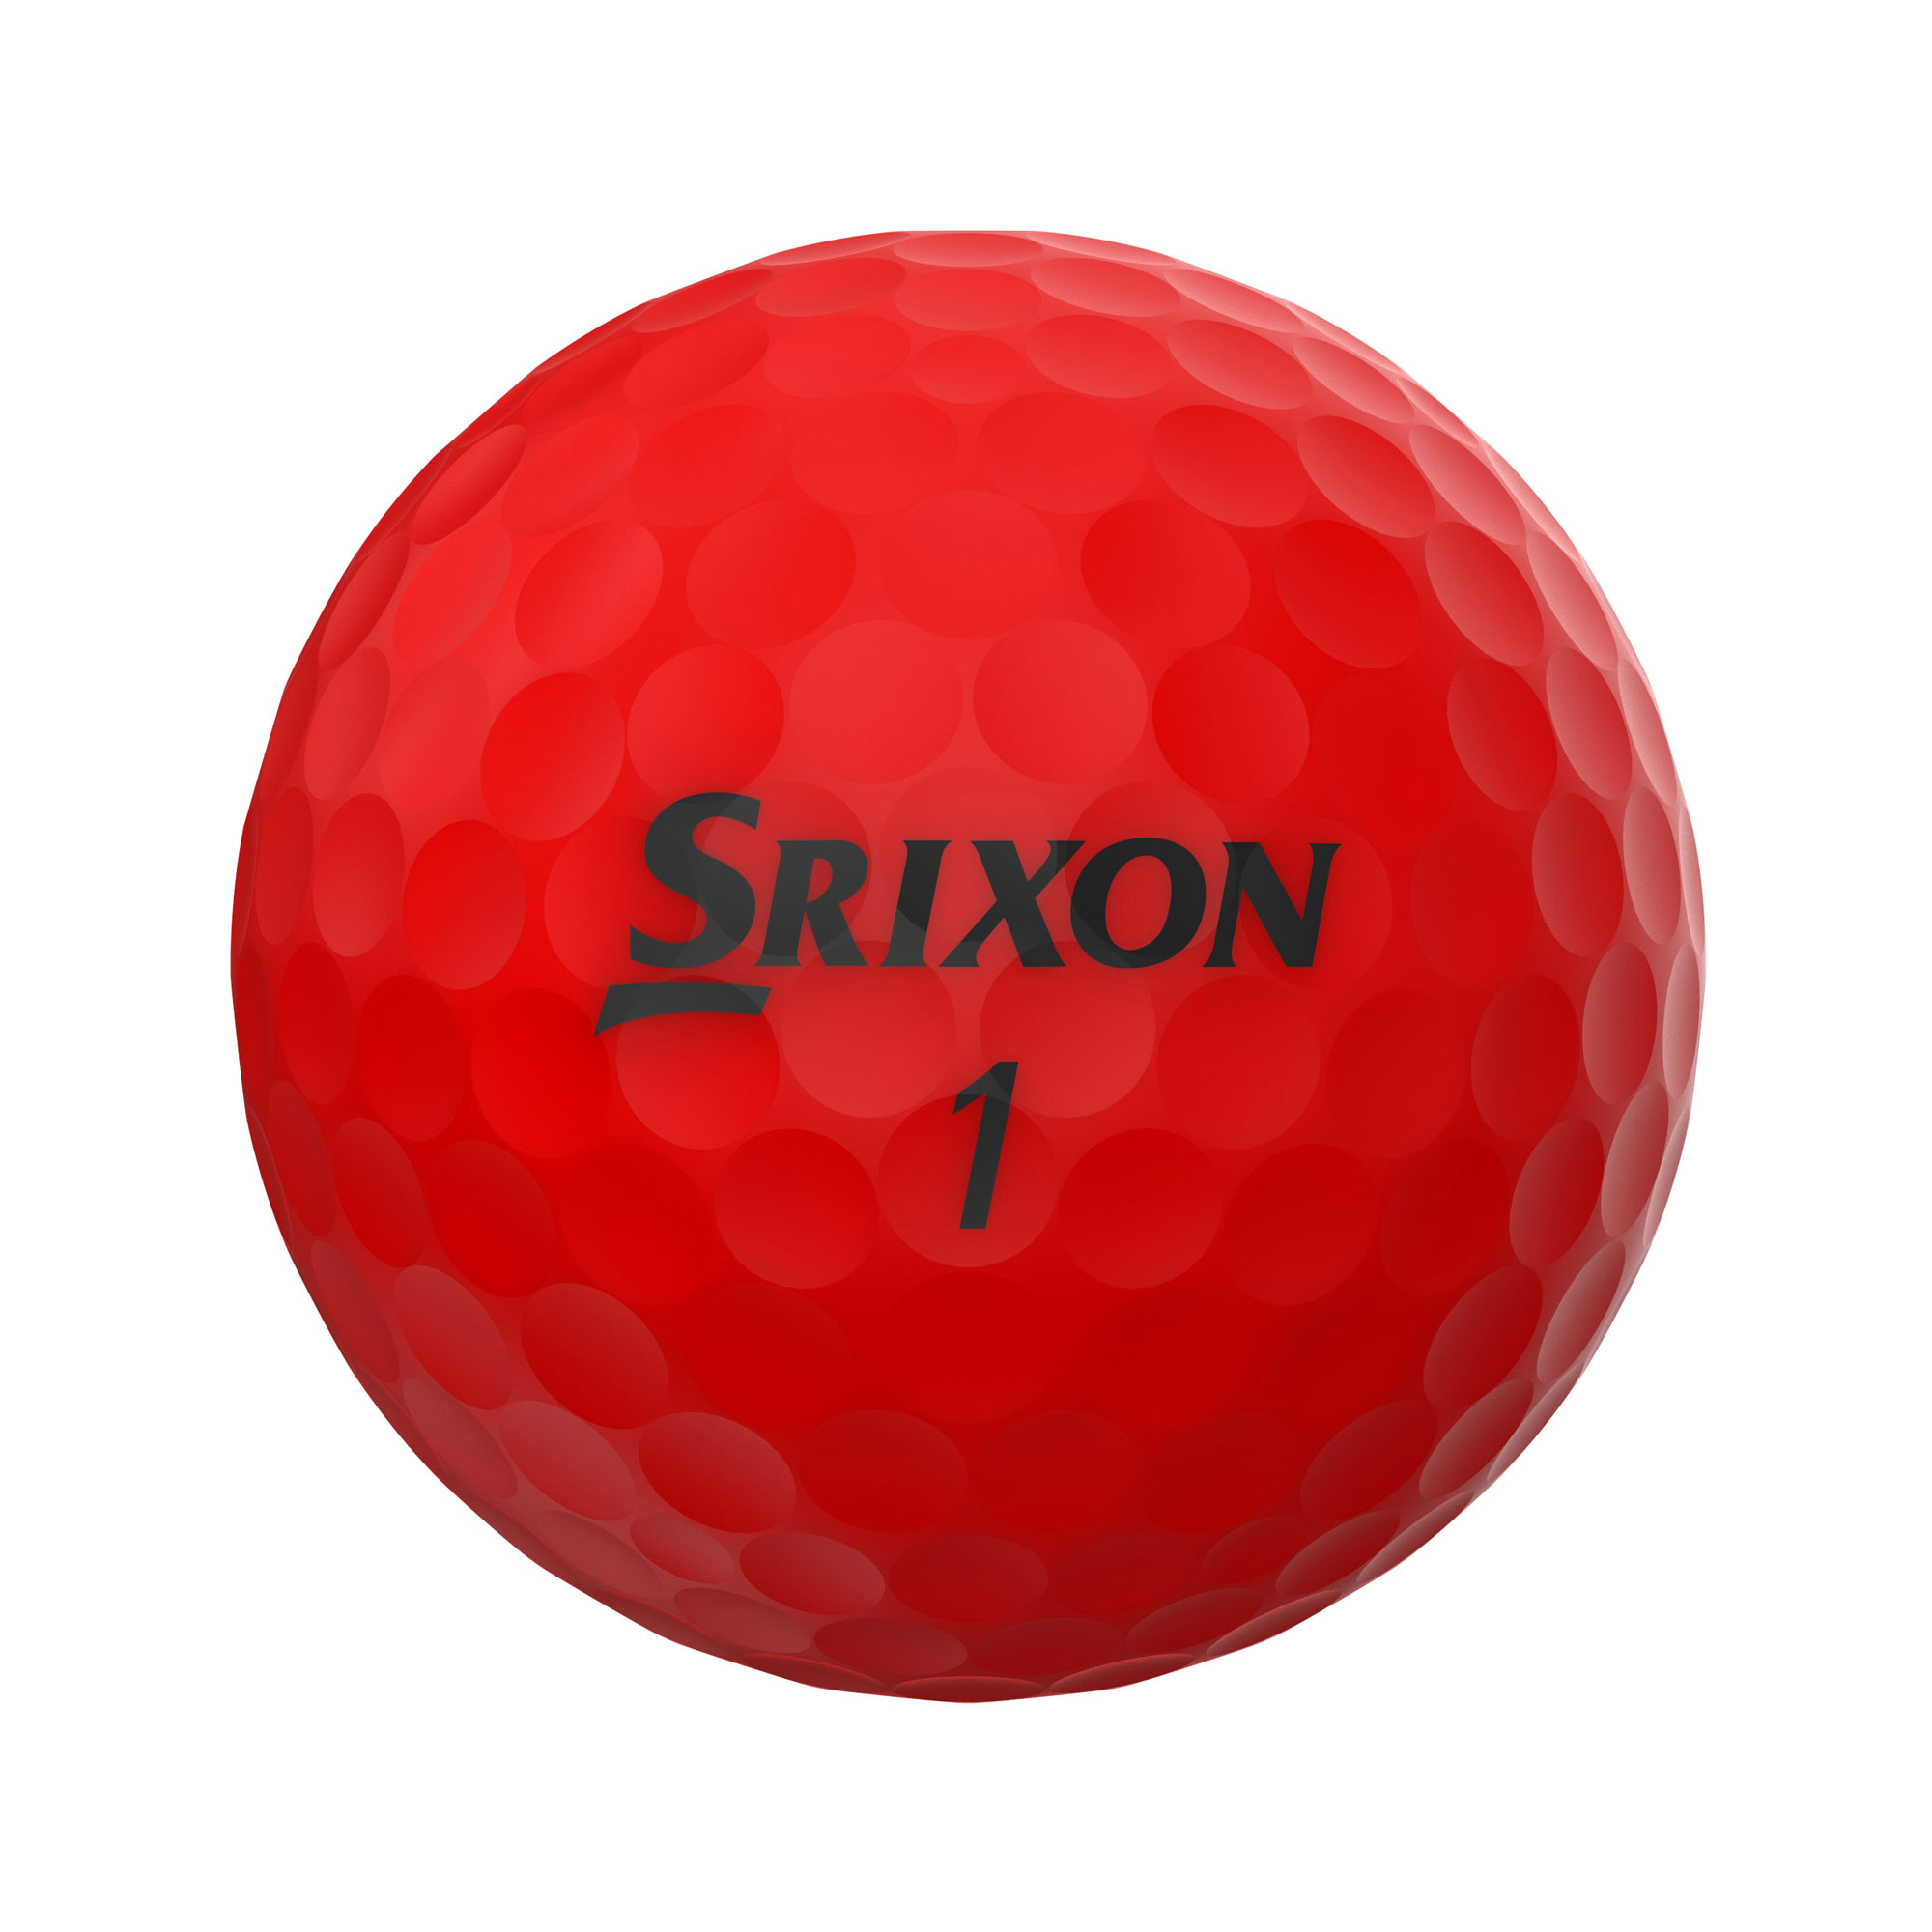 Srixon Soft Feel Golfbälle bedruckt, brite red (VPE à 12 Bälle)